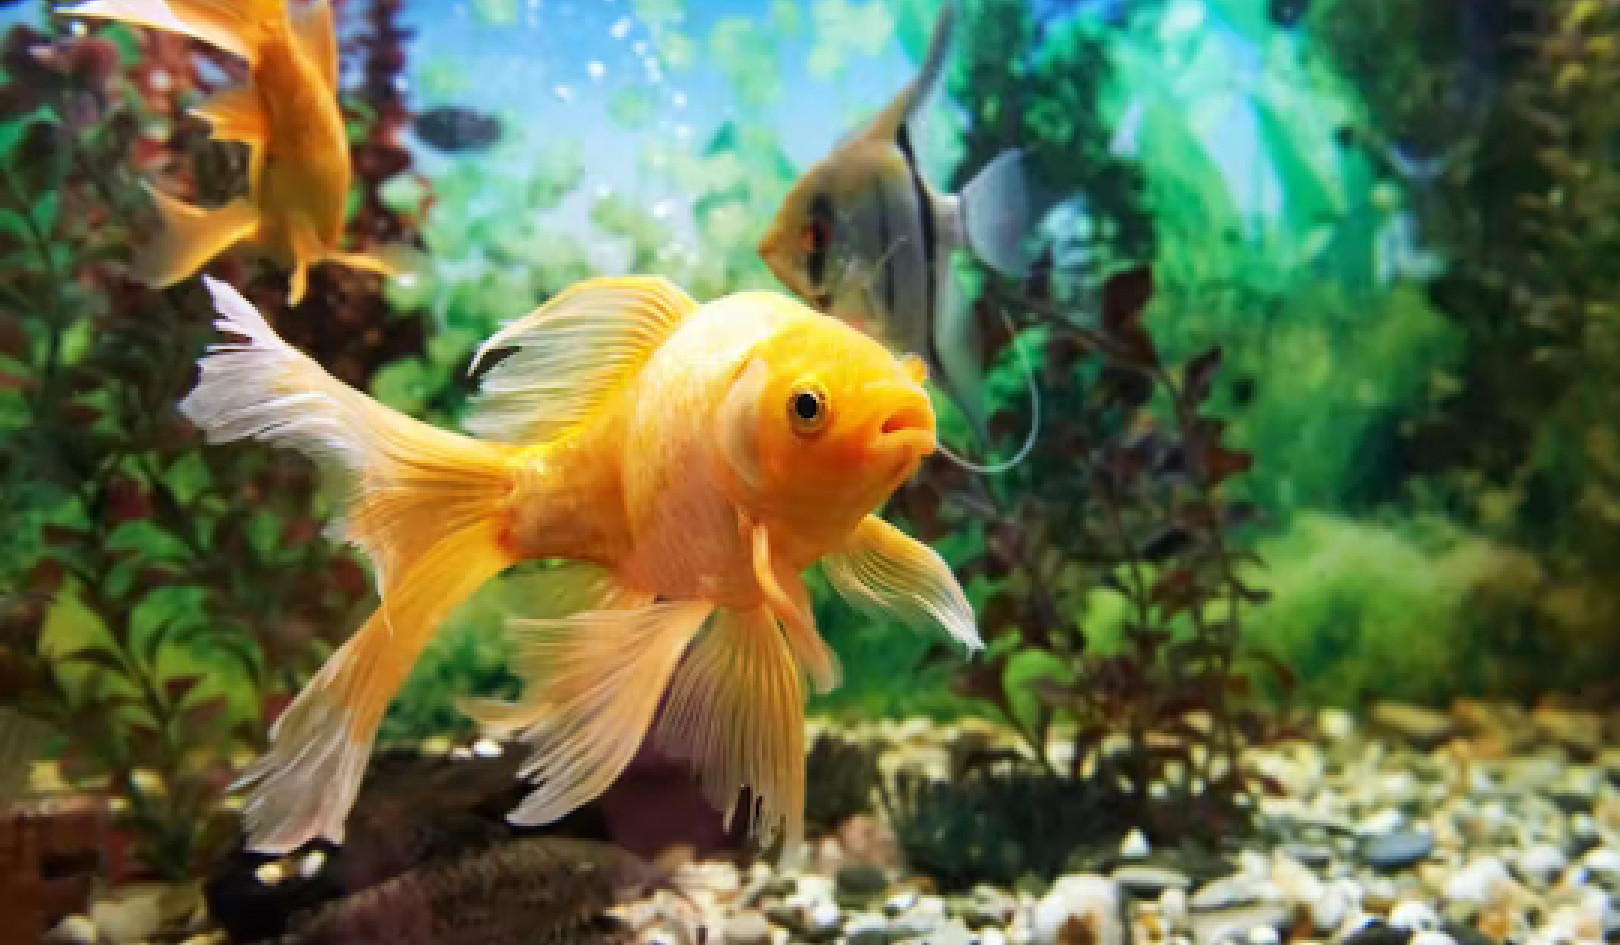 Les poissons de votre aquarium sont-ils heureux ? Voici comment vous pouvez dire